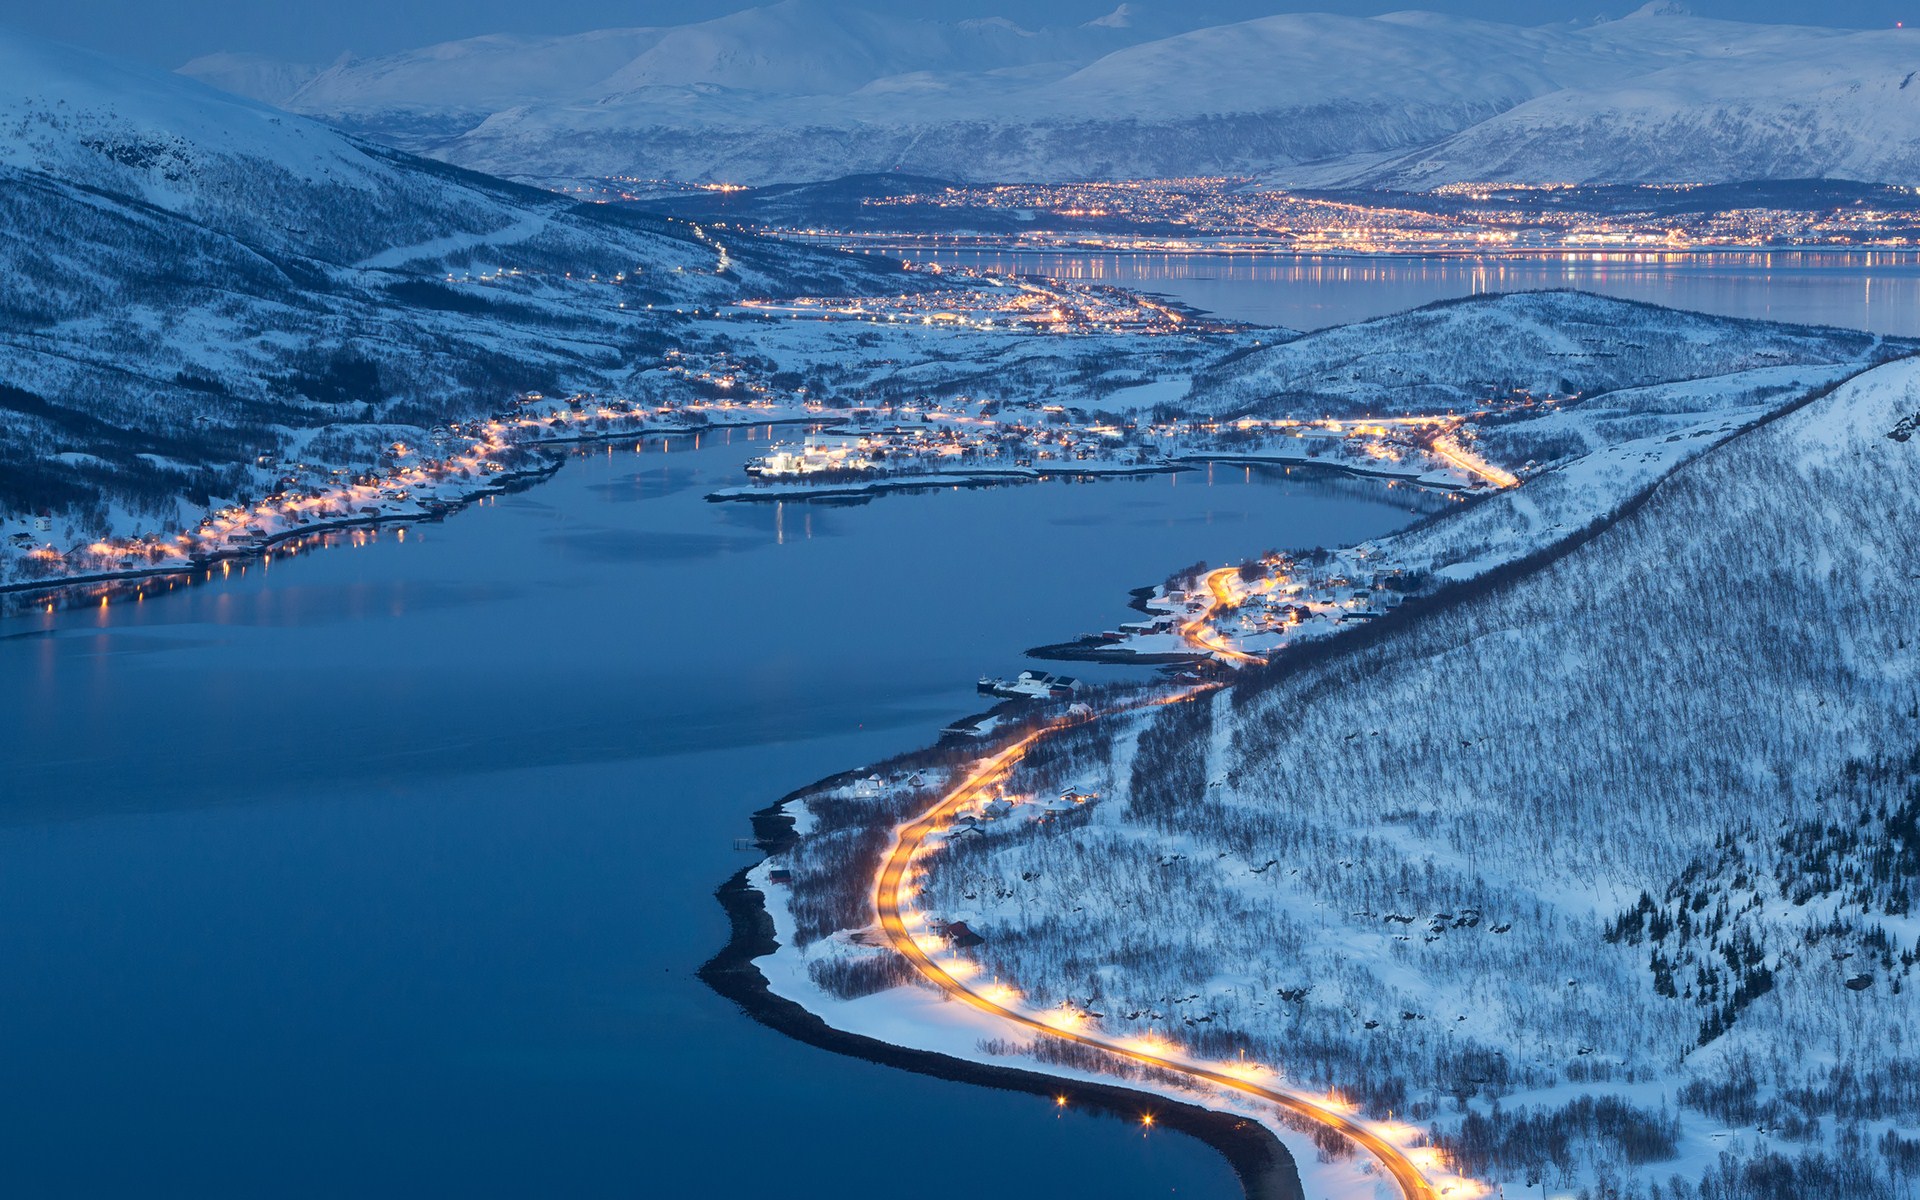 Скачать картинку Зима, Норвегия, Фотографии в телефон бесплатно.